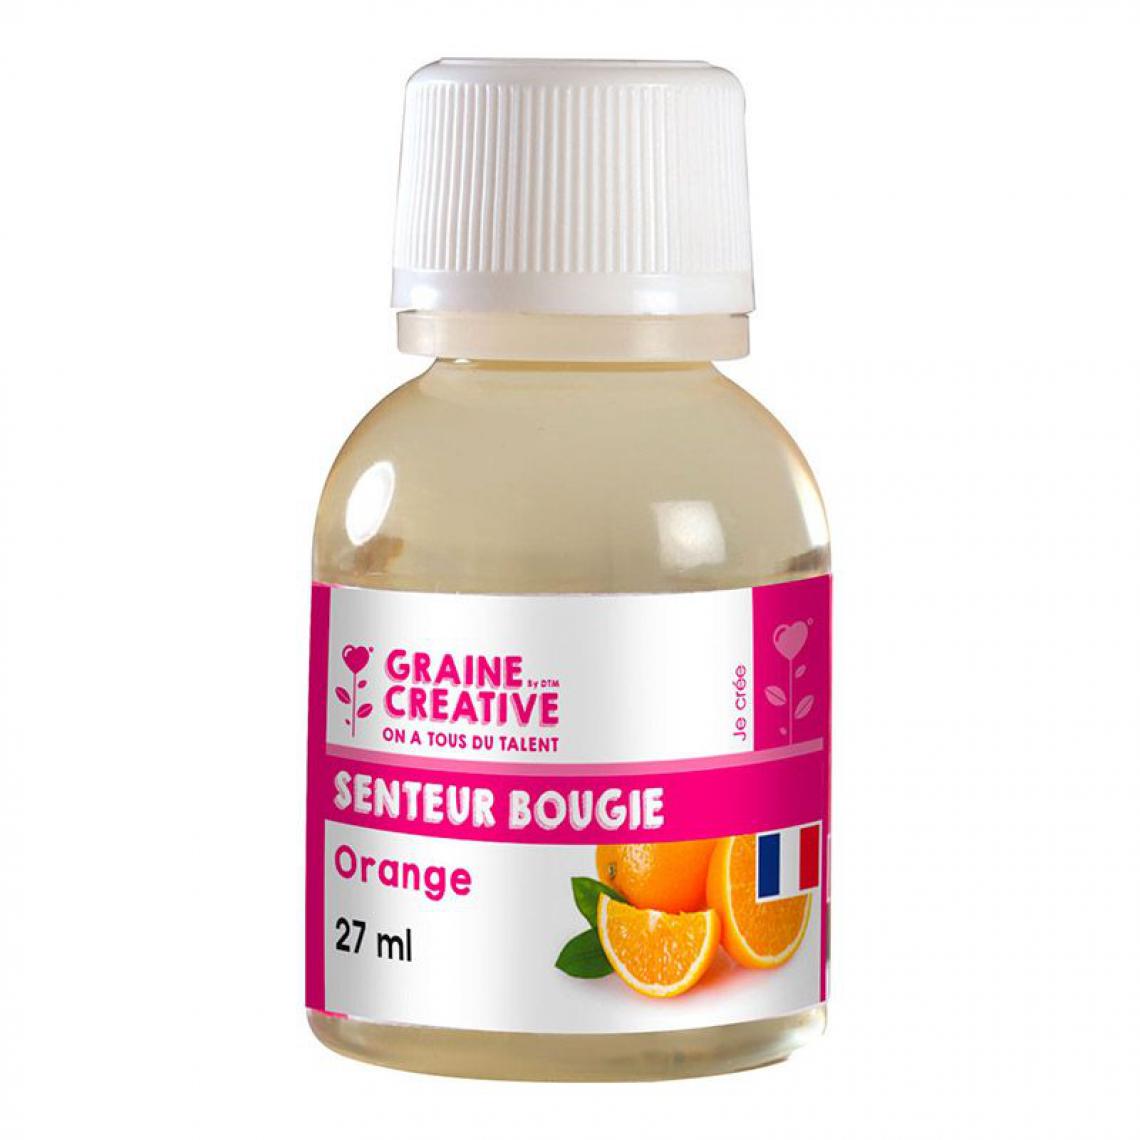 Graines Creatives - Parfum pour bougie - senteur Orange 27 ml - Bougies